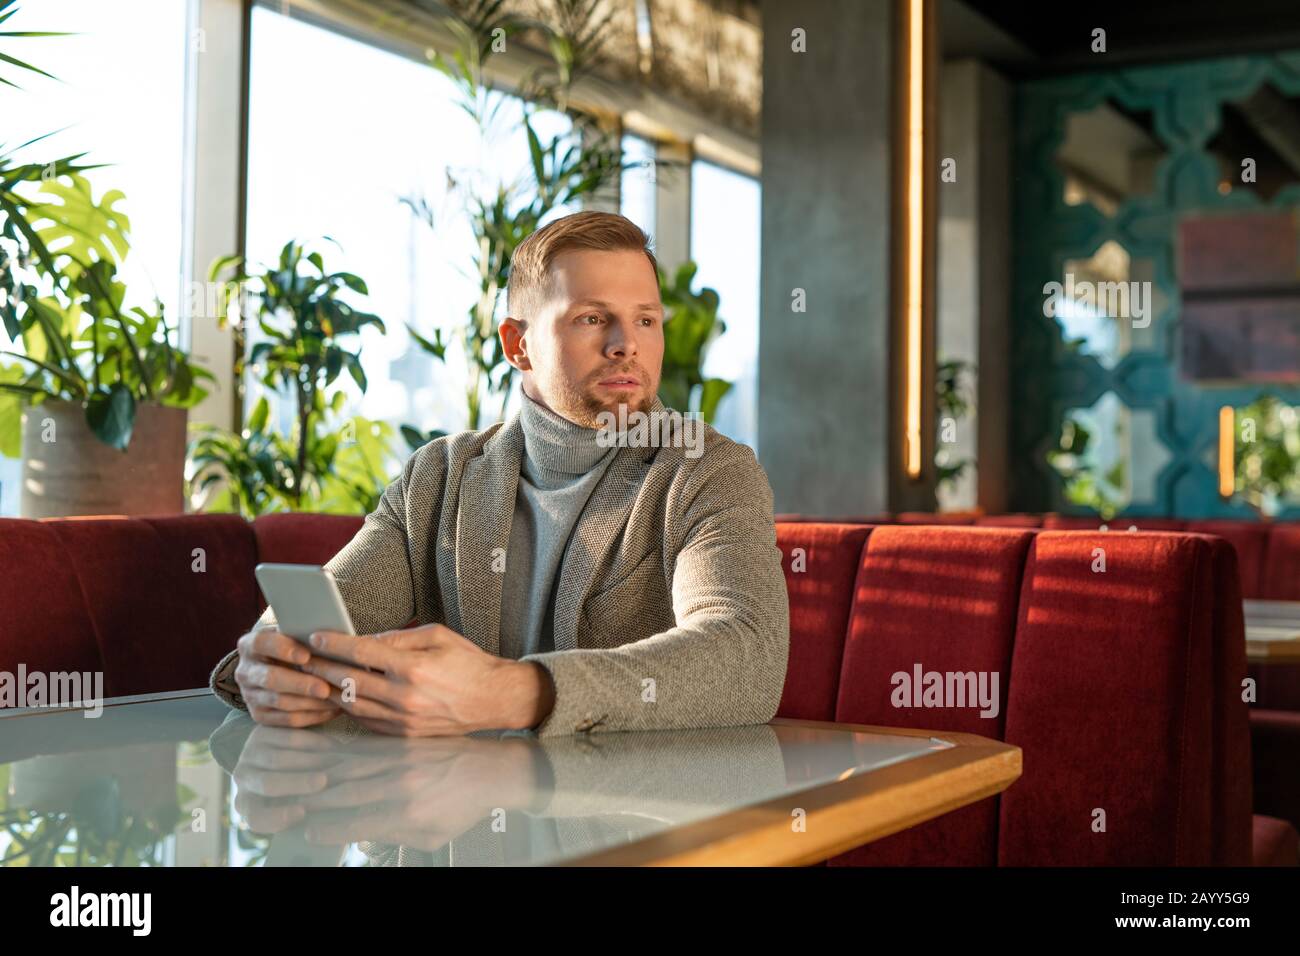 Horizontales Portrait des jungen erwachsenen kaukasischen Mannes, der in einem modernen Café sitzt, in dem das Smartphone auf jemanden wartet Stockfoto